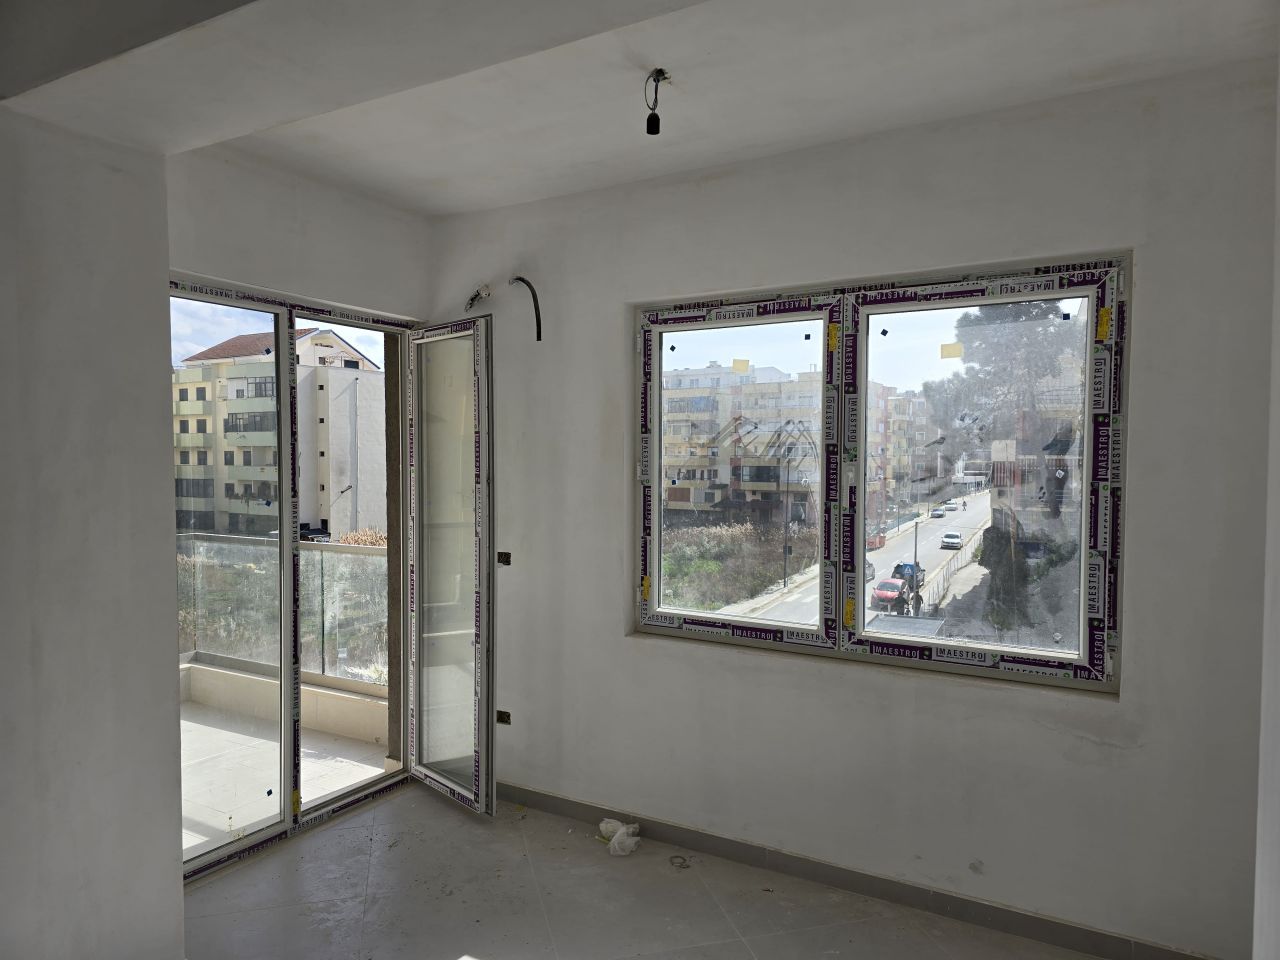 Eladó Egy Hálószobás Lakás Golem Durresben Albániában Csak Néhány Méterre A Tengertől